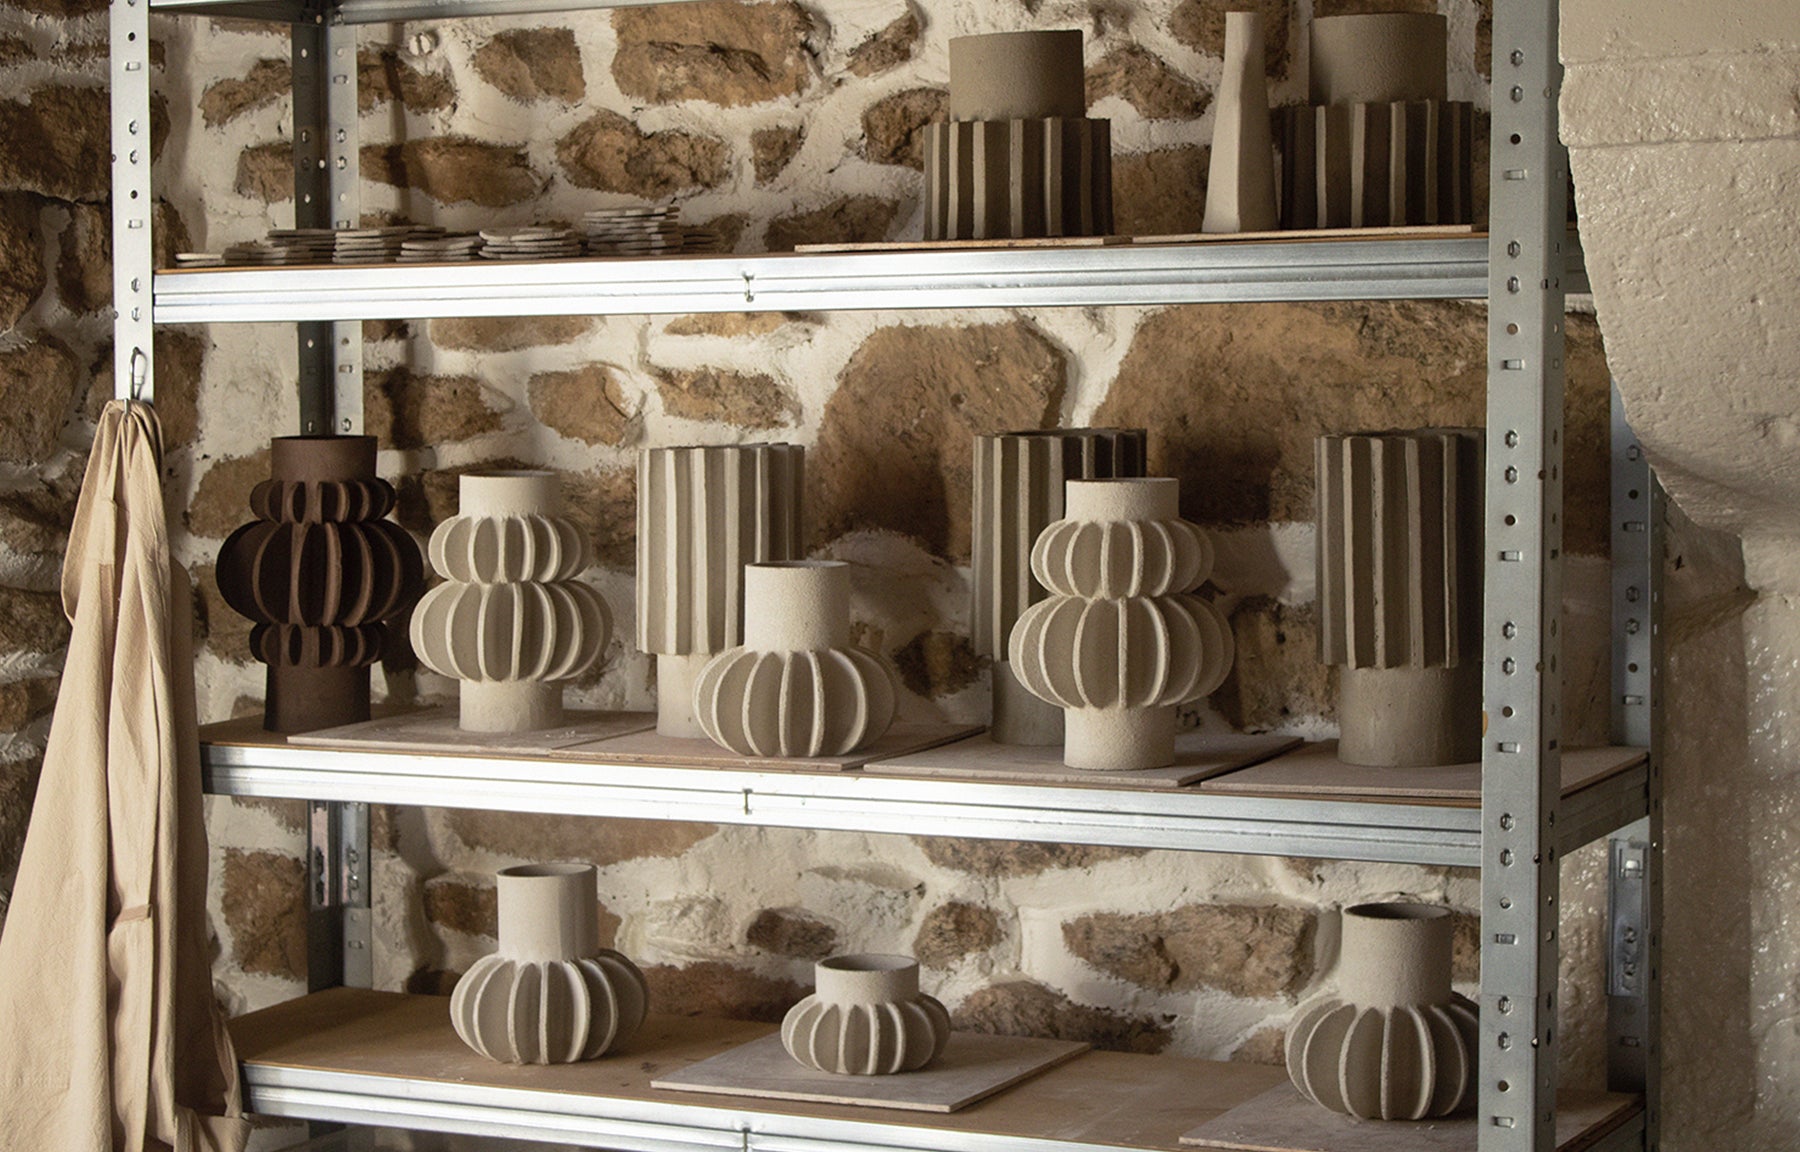 Ini Ceramique Ceramics Studio Ceramic Vase Handmade Design